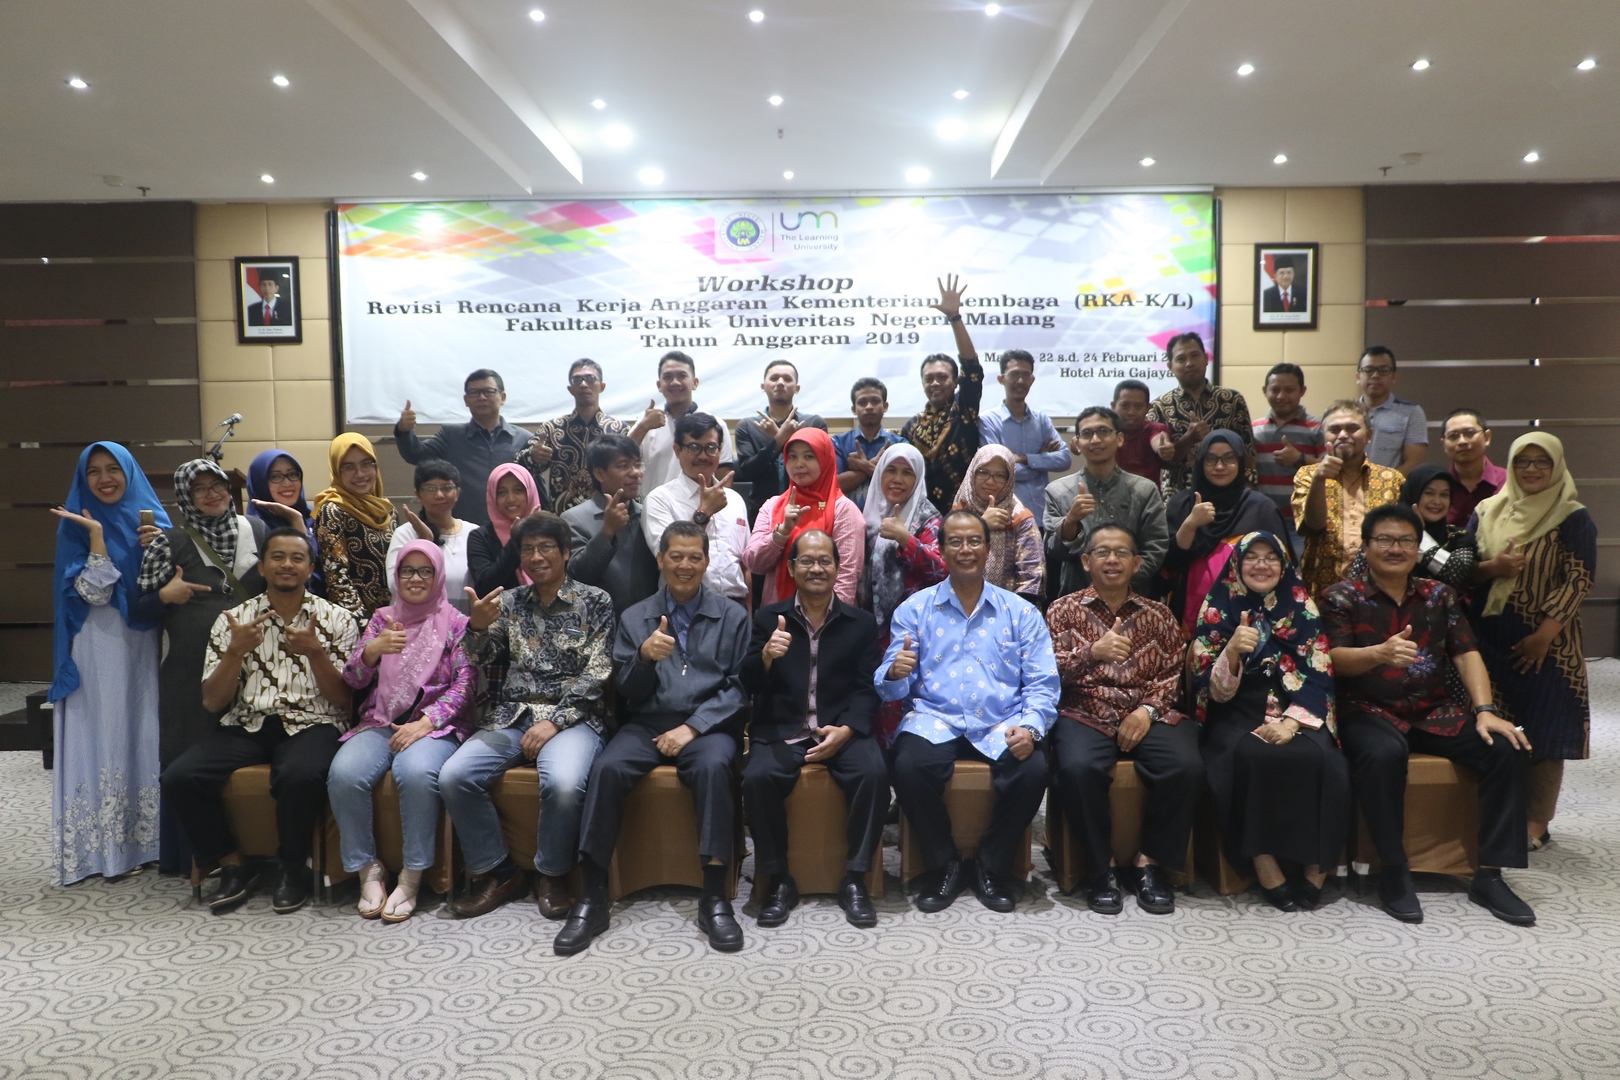 Workshop Revisi Rencana Kerja Anggaran Kementerian / Lembaga (RKA-K/L) Fakultas Teknik Universitas Negeri Malang Tahun Anggaran 2019